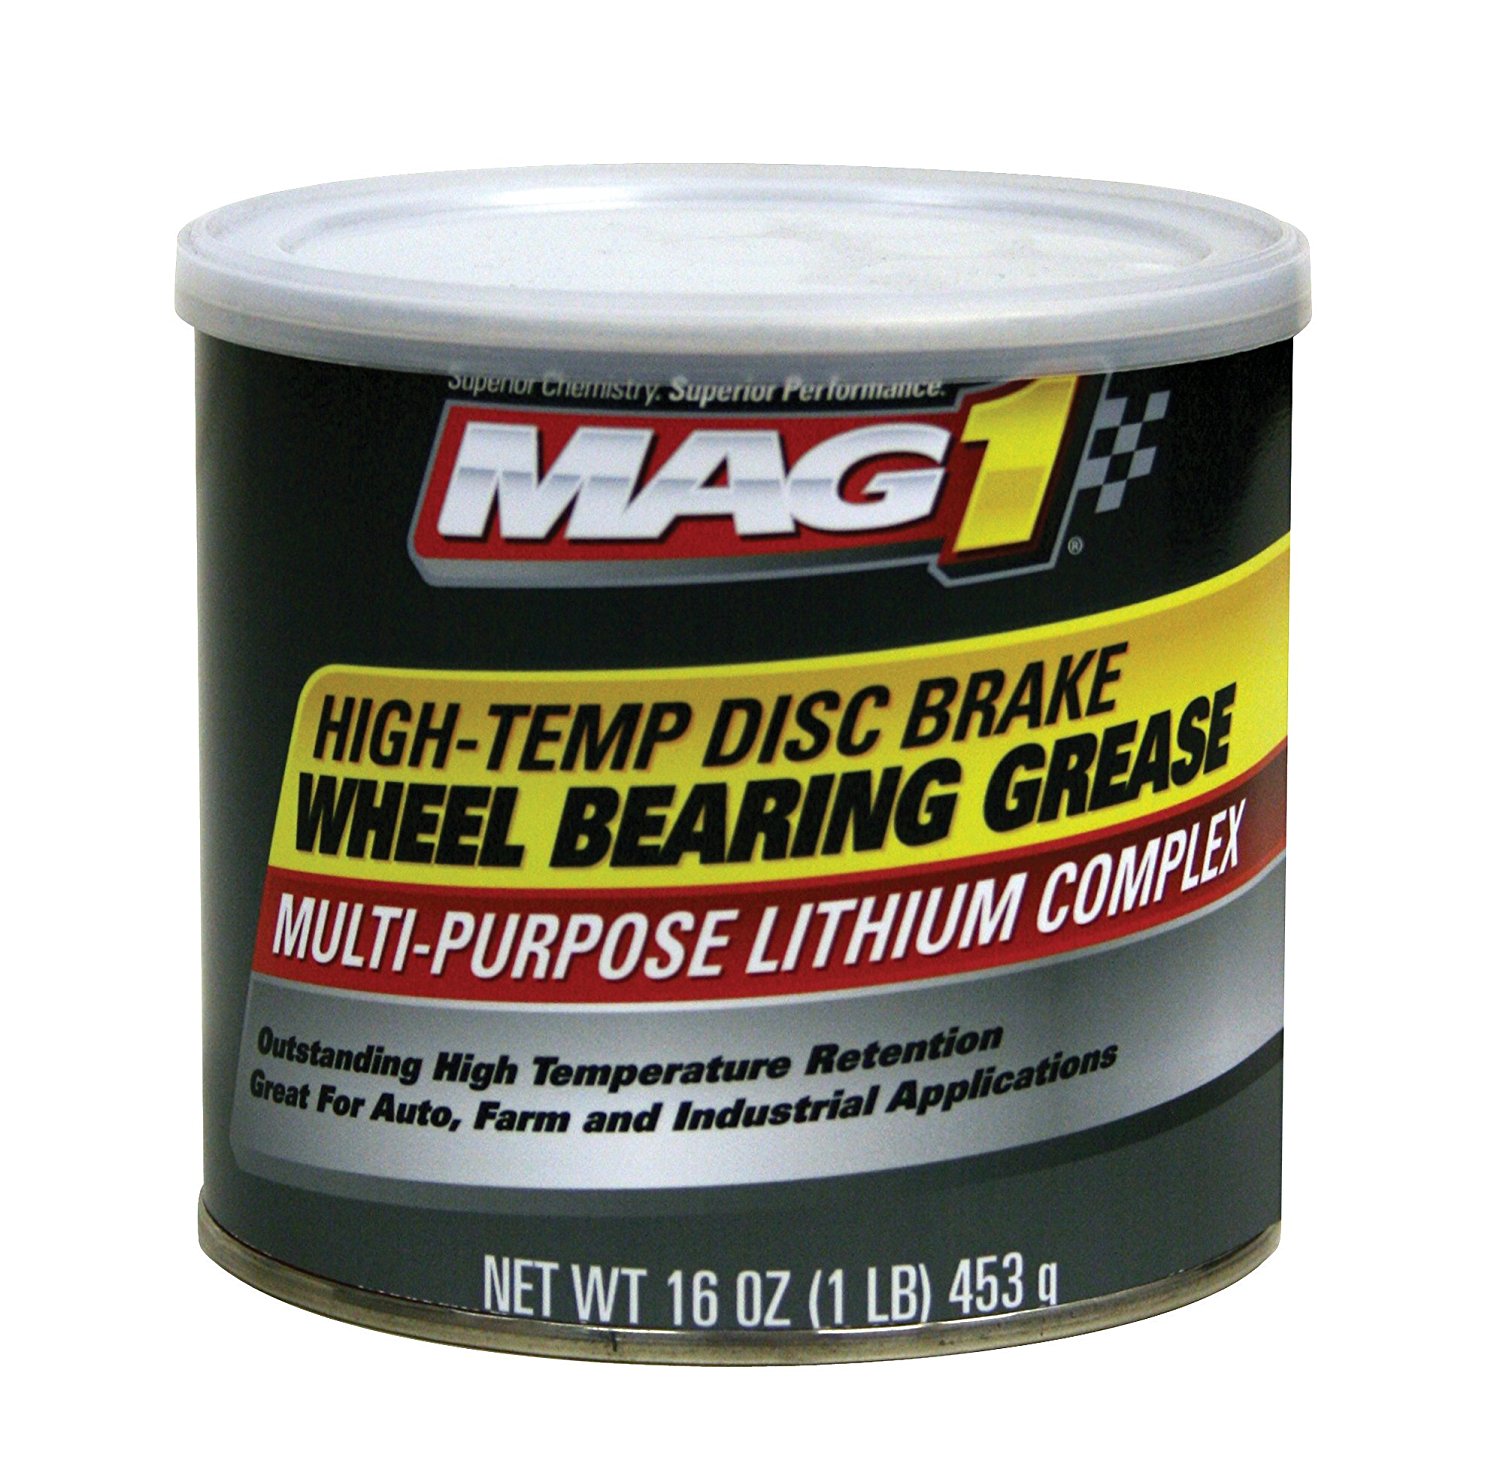 Mag 1 High-Temp Disc Brake Wheel Bearing Grease